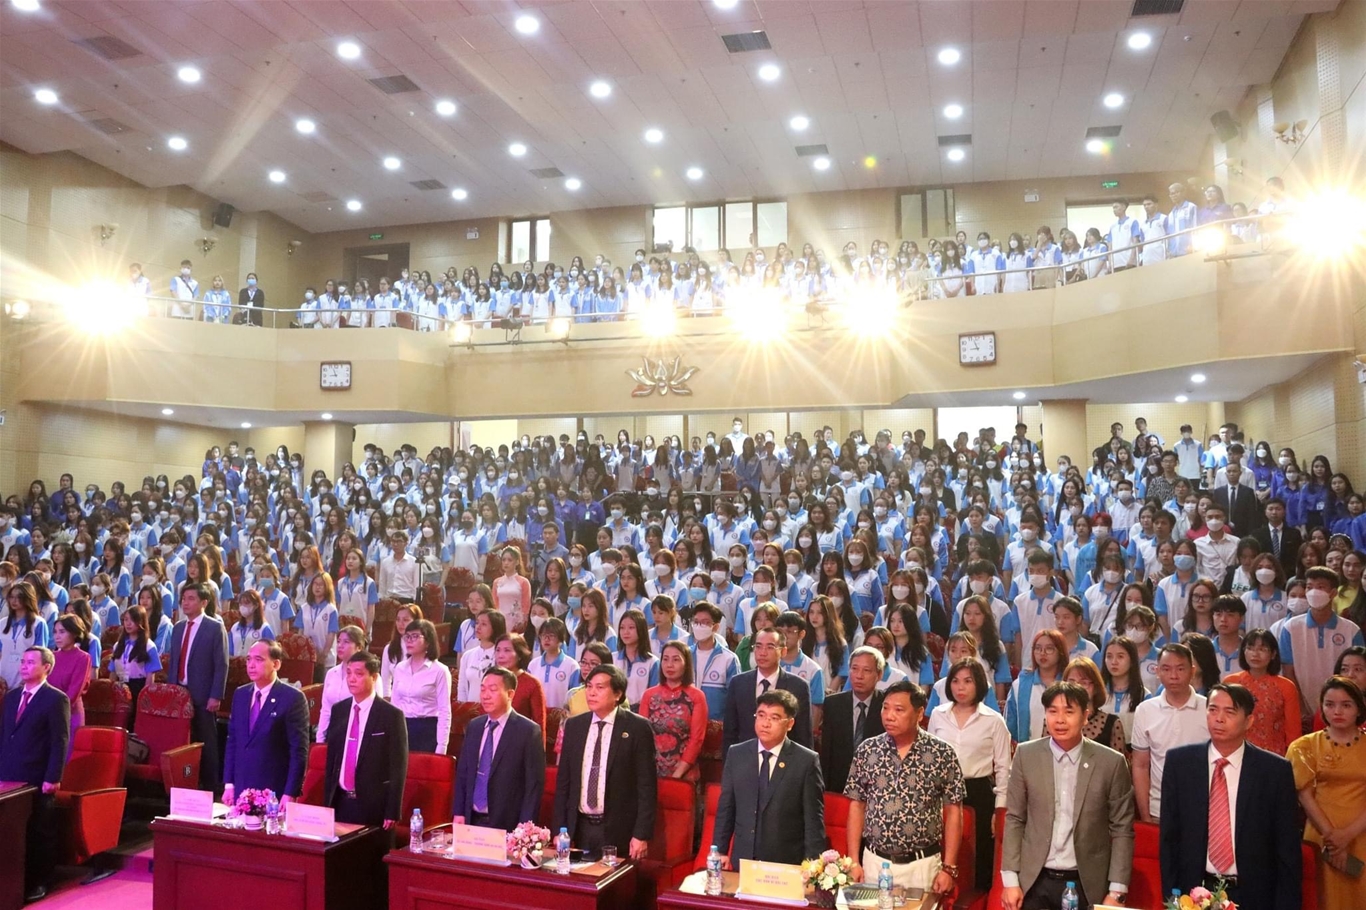 Lễ Khai giảng Trường Cao đẳng Y Hà Nội năm học 2022 - 2023 và Kỷ niệm 40  năm ngày Nhà giáo Việt Nam. - Trường Cao đẳng Y Hà Nội- Mã trường CDD 0122